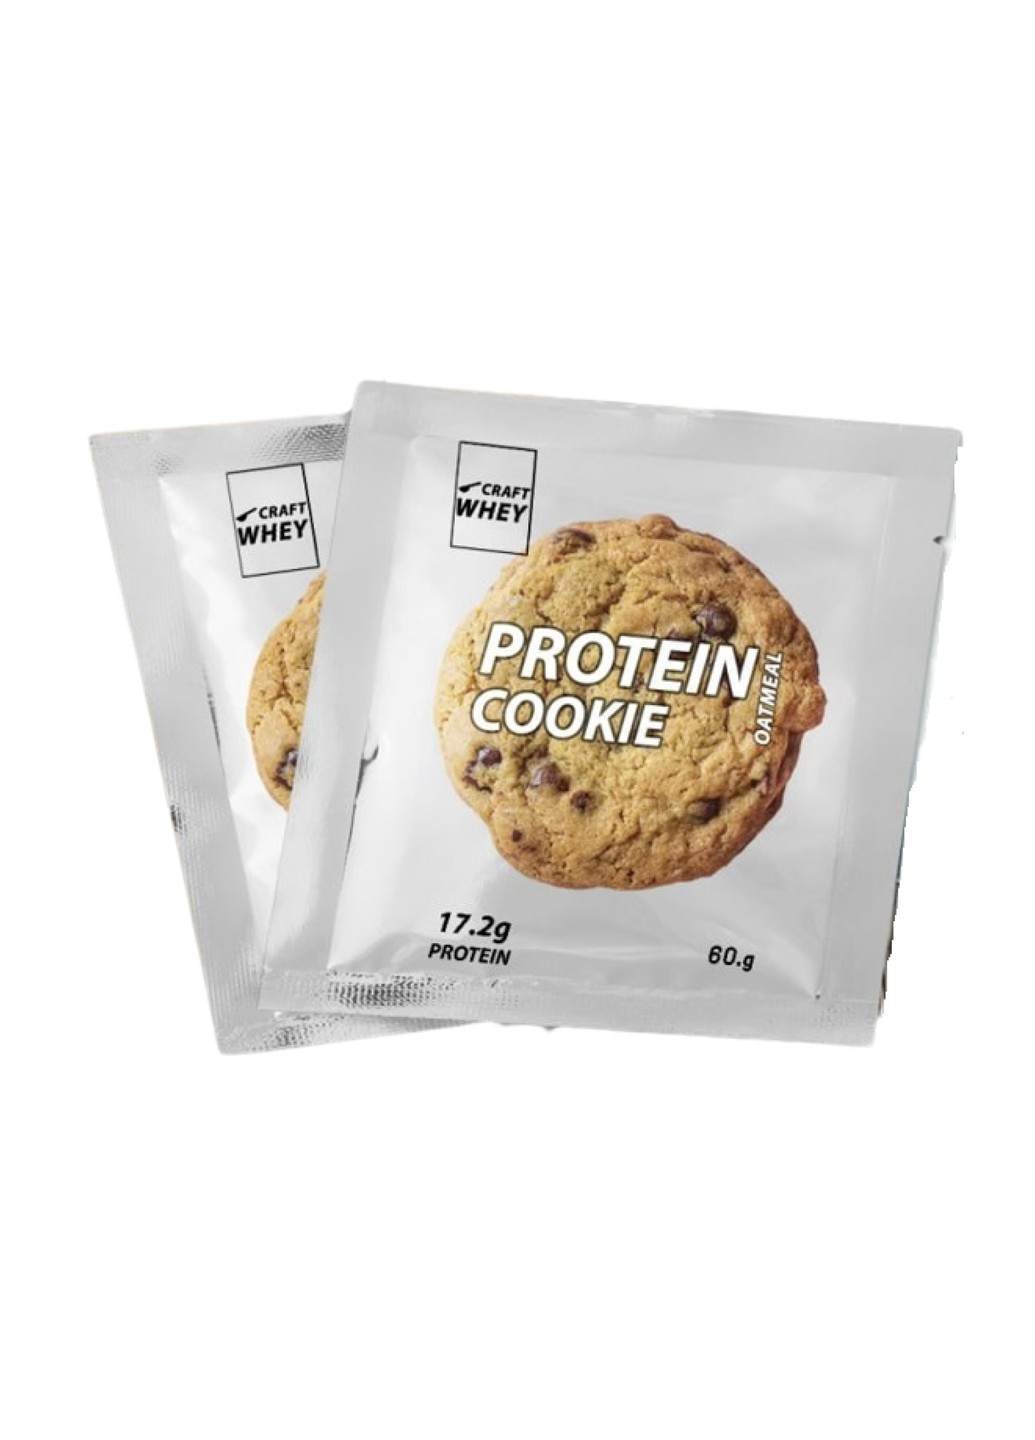 Протеиновое Печенье Protein Cookie - 60г Шоколад Craft Whey (278007014)